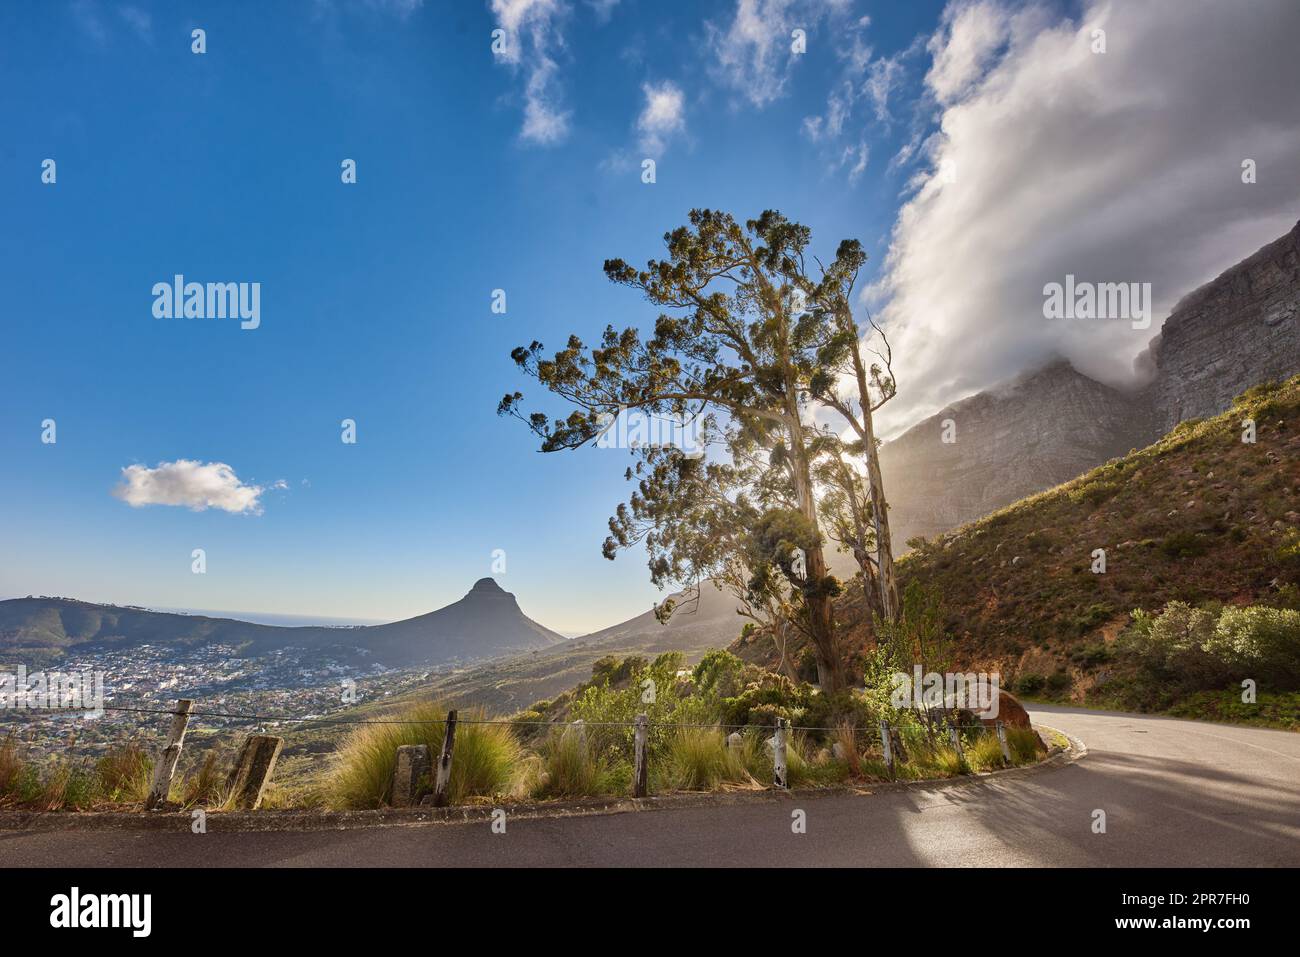 Malerische Landschaft mit kurvigen Straßen und wolkenblauem Himmel am Tafelberg in Kapstadt, Westkap. Heller Himmel, Baum und ruhige Asphaltstraße im Sommer. Autobahn in der Nähe der Natur Stockfoto